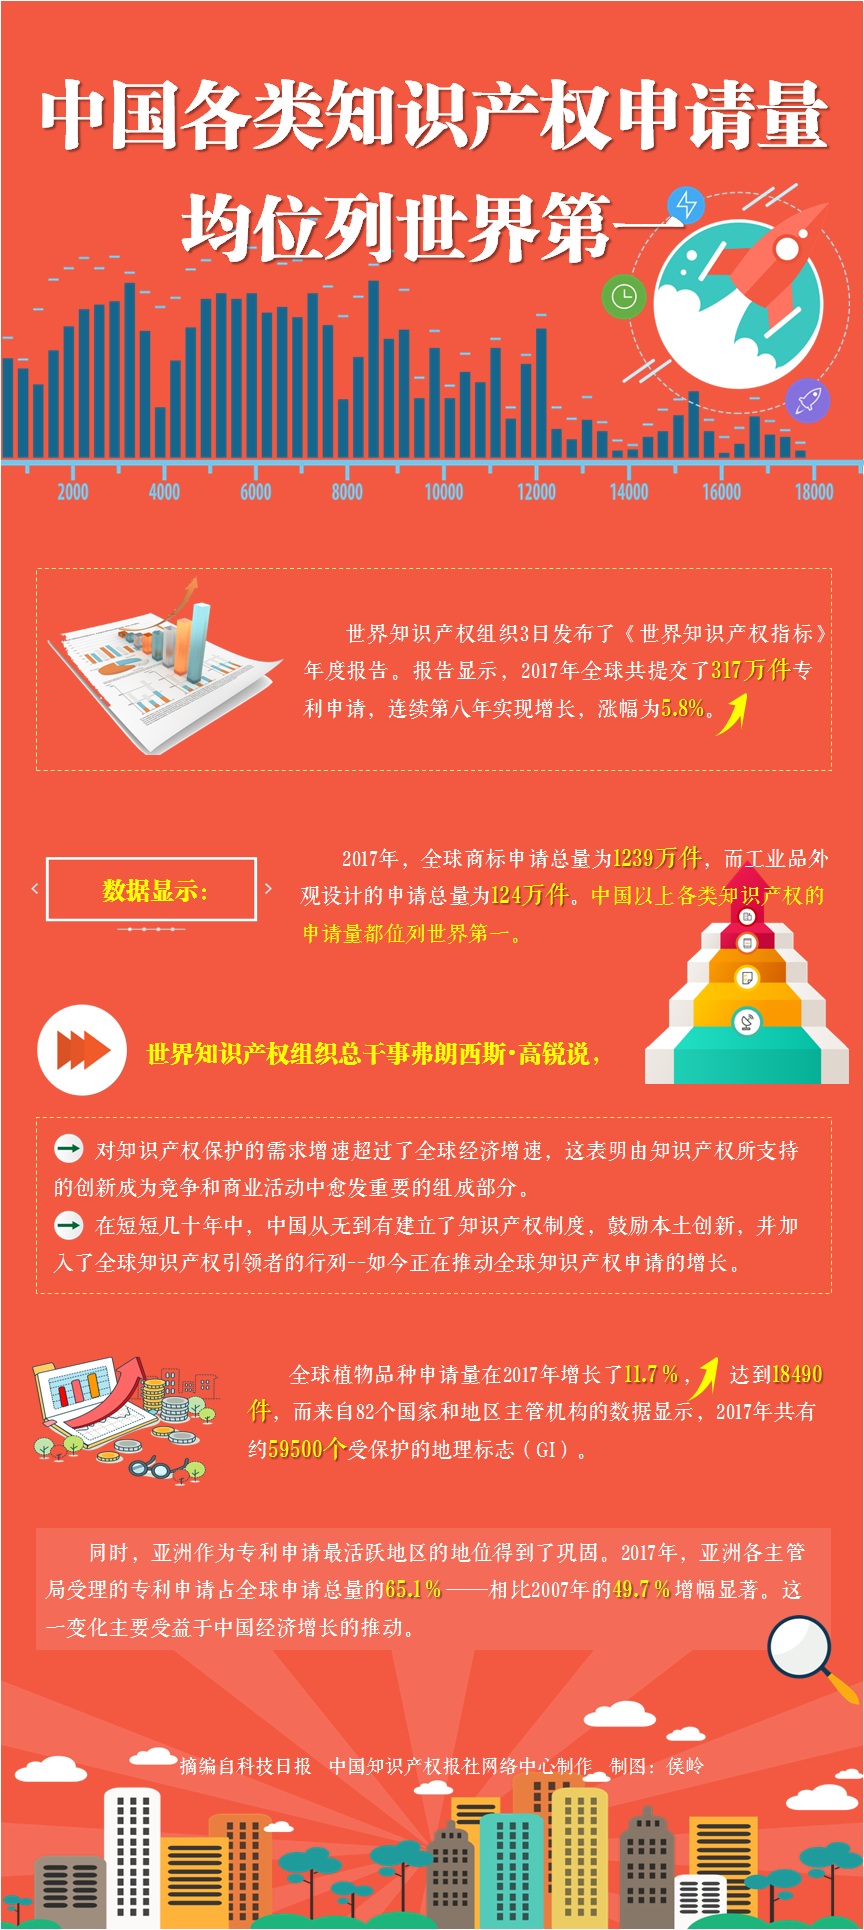 2018年报告 中国各类知识产权申请量均第一.jpg